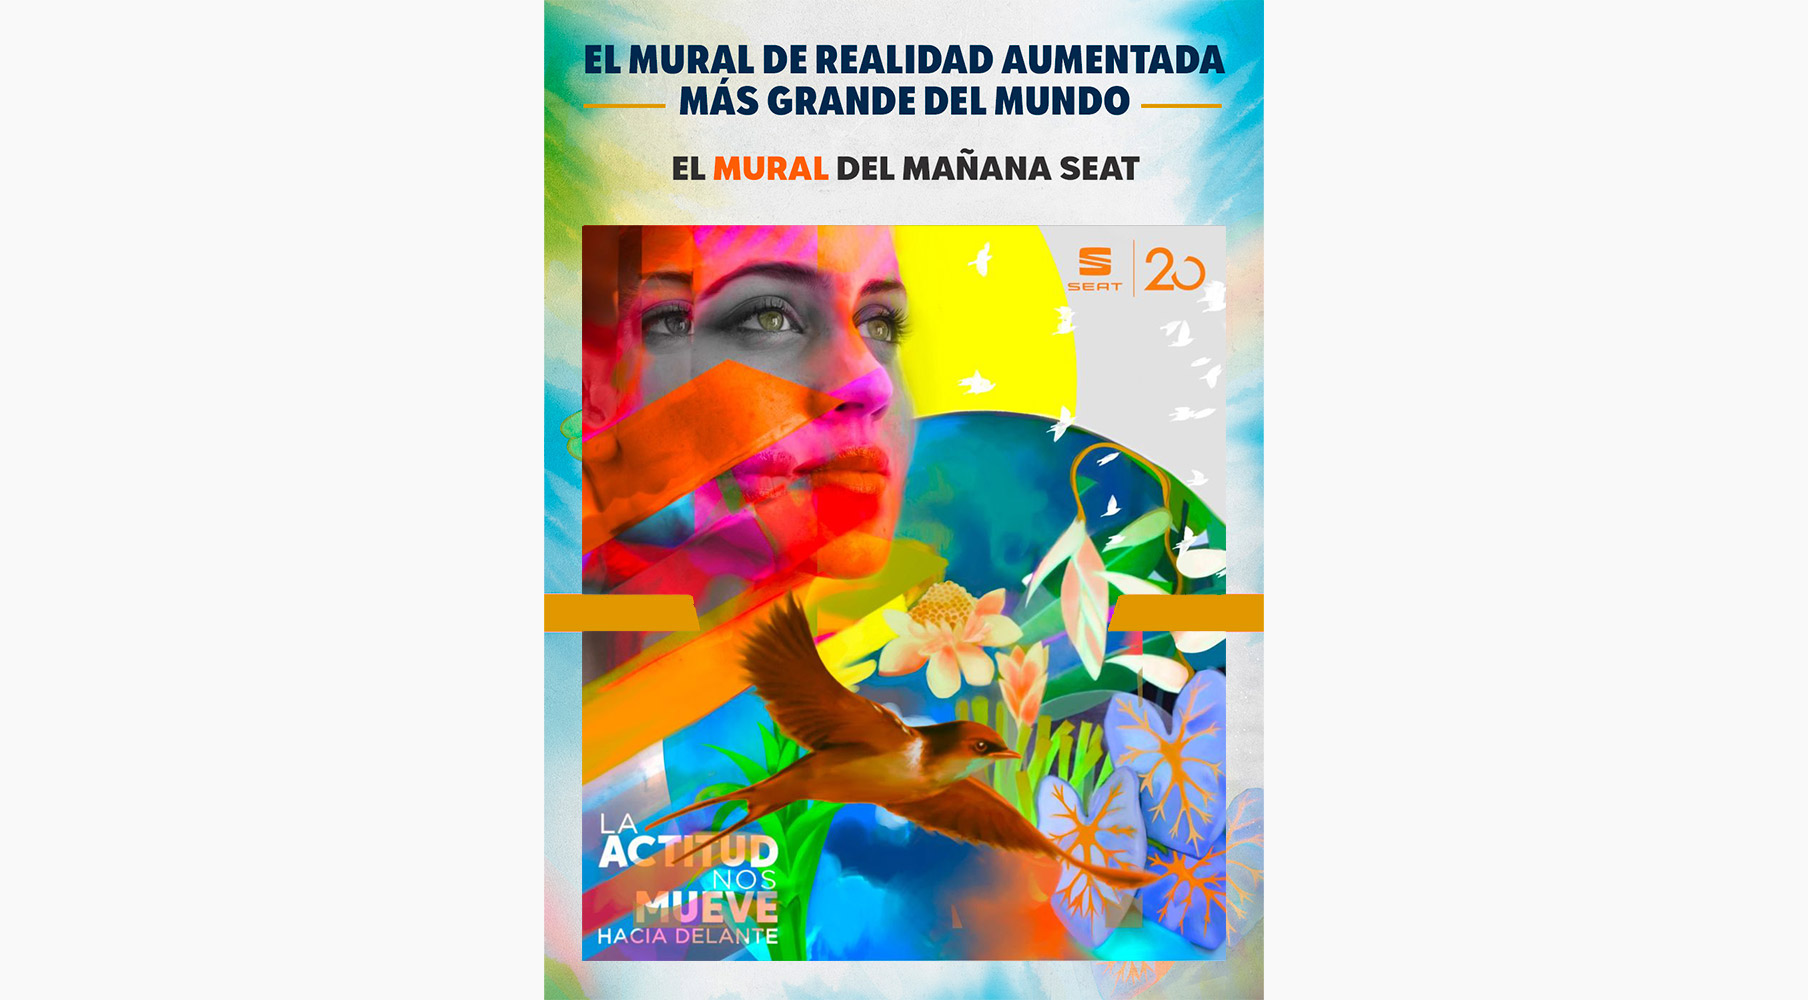 Con esta expresión artística, SEAT México comparte la celebración de su 20 aniversario con todos sus fans.